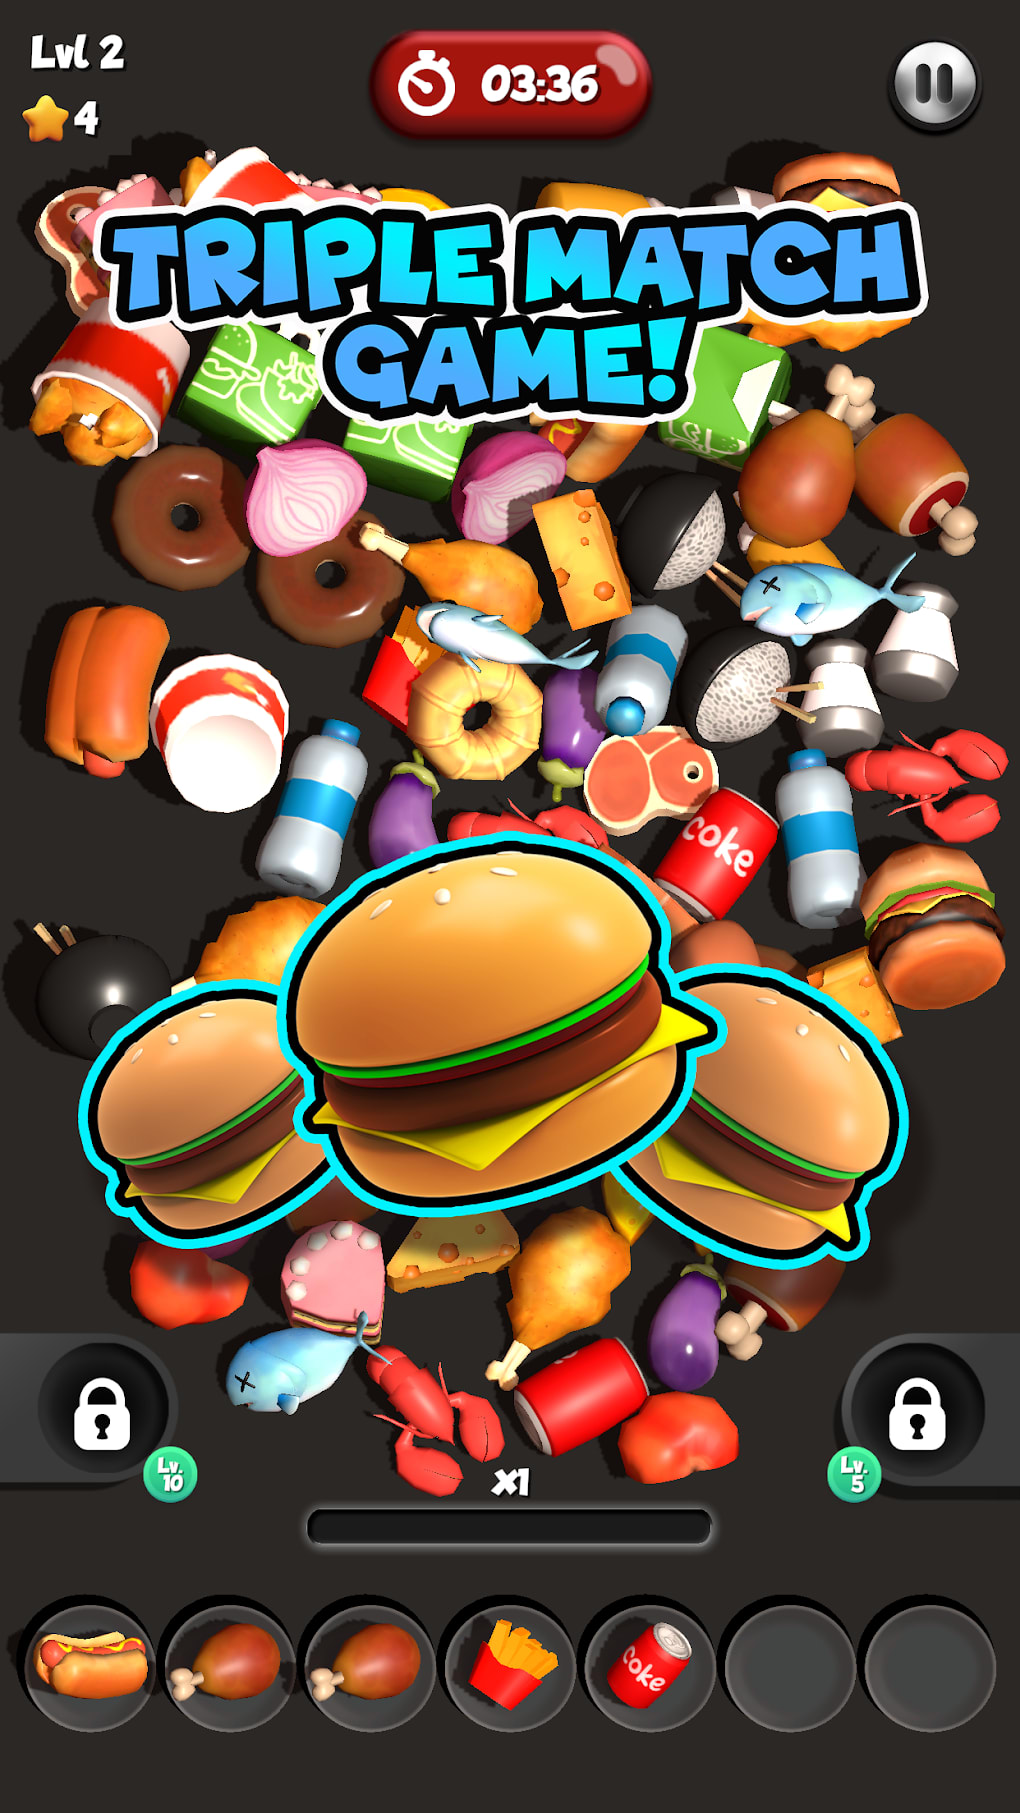 Jogos de hambúrguer jogos de culinária 3D versão móvel andróide